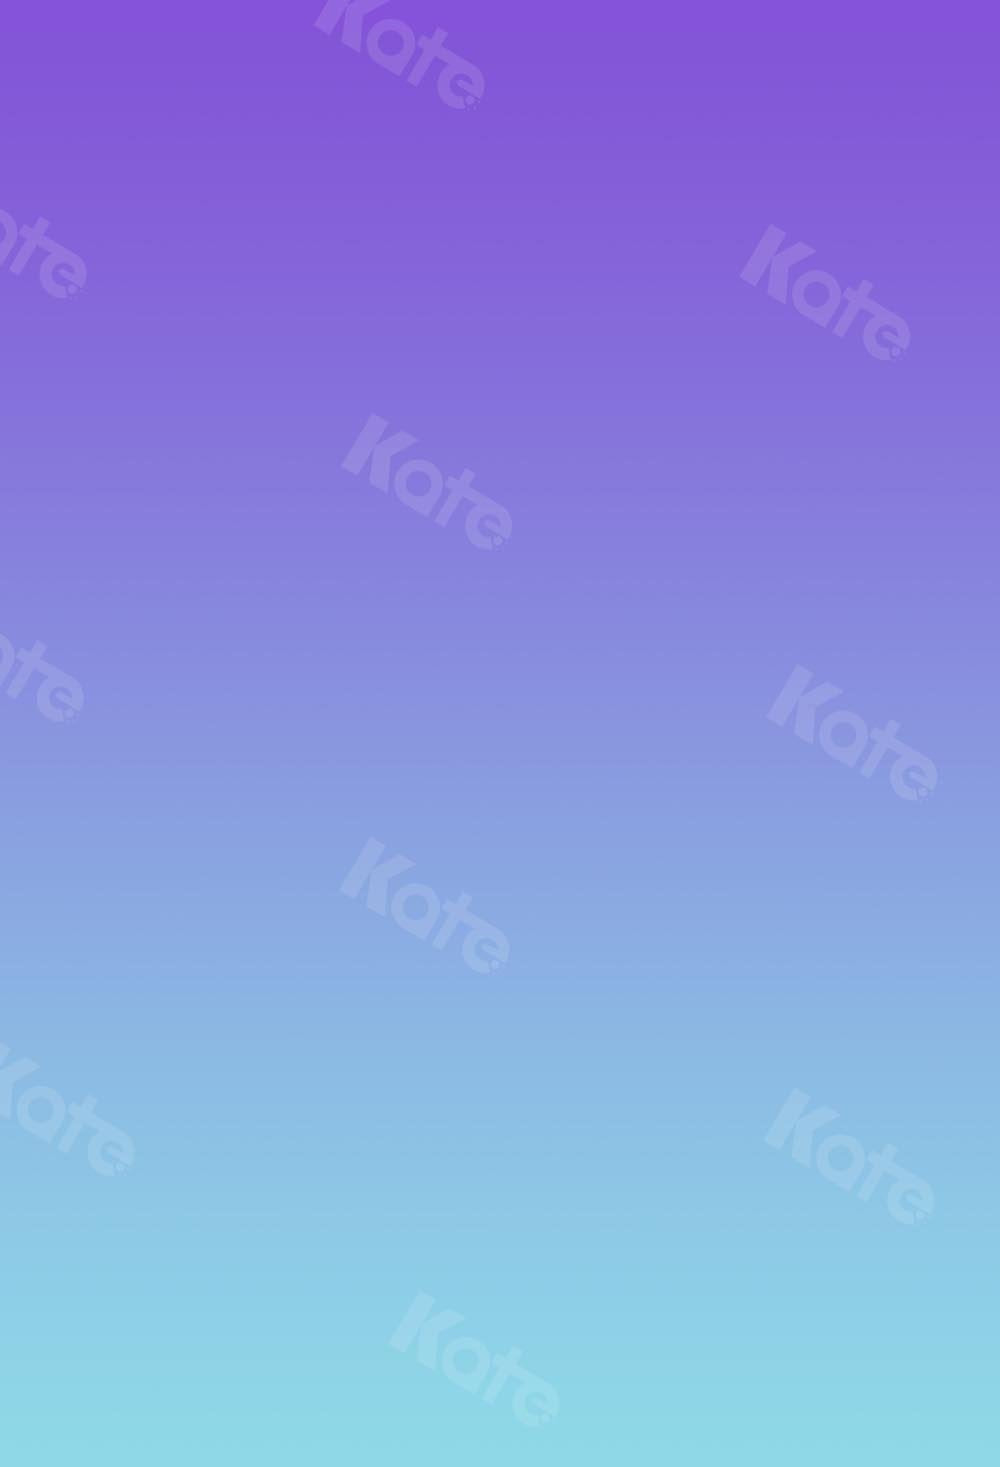 Kate Abstrakter lila Farbverlauf blauer Hintergrund Ombre